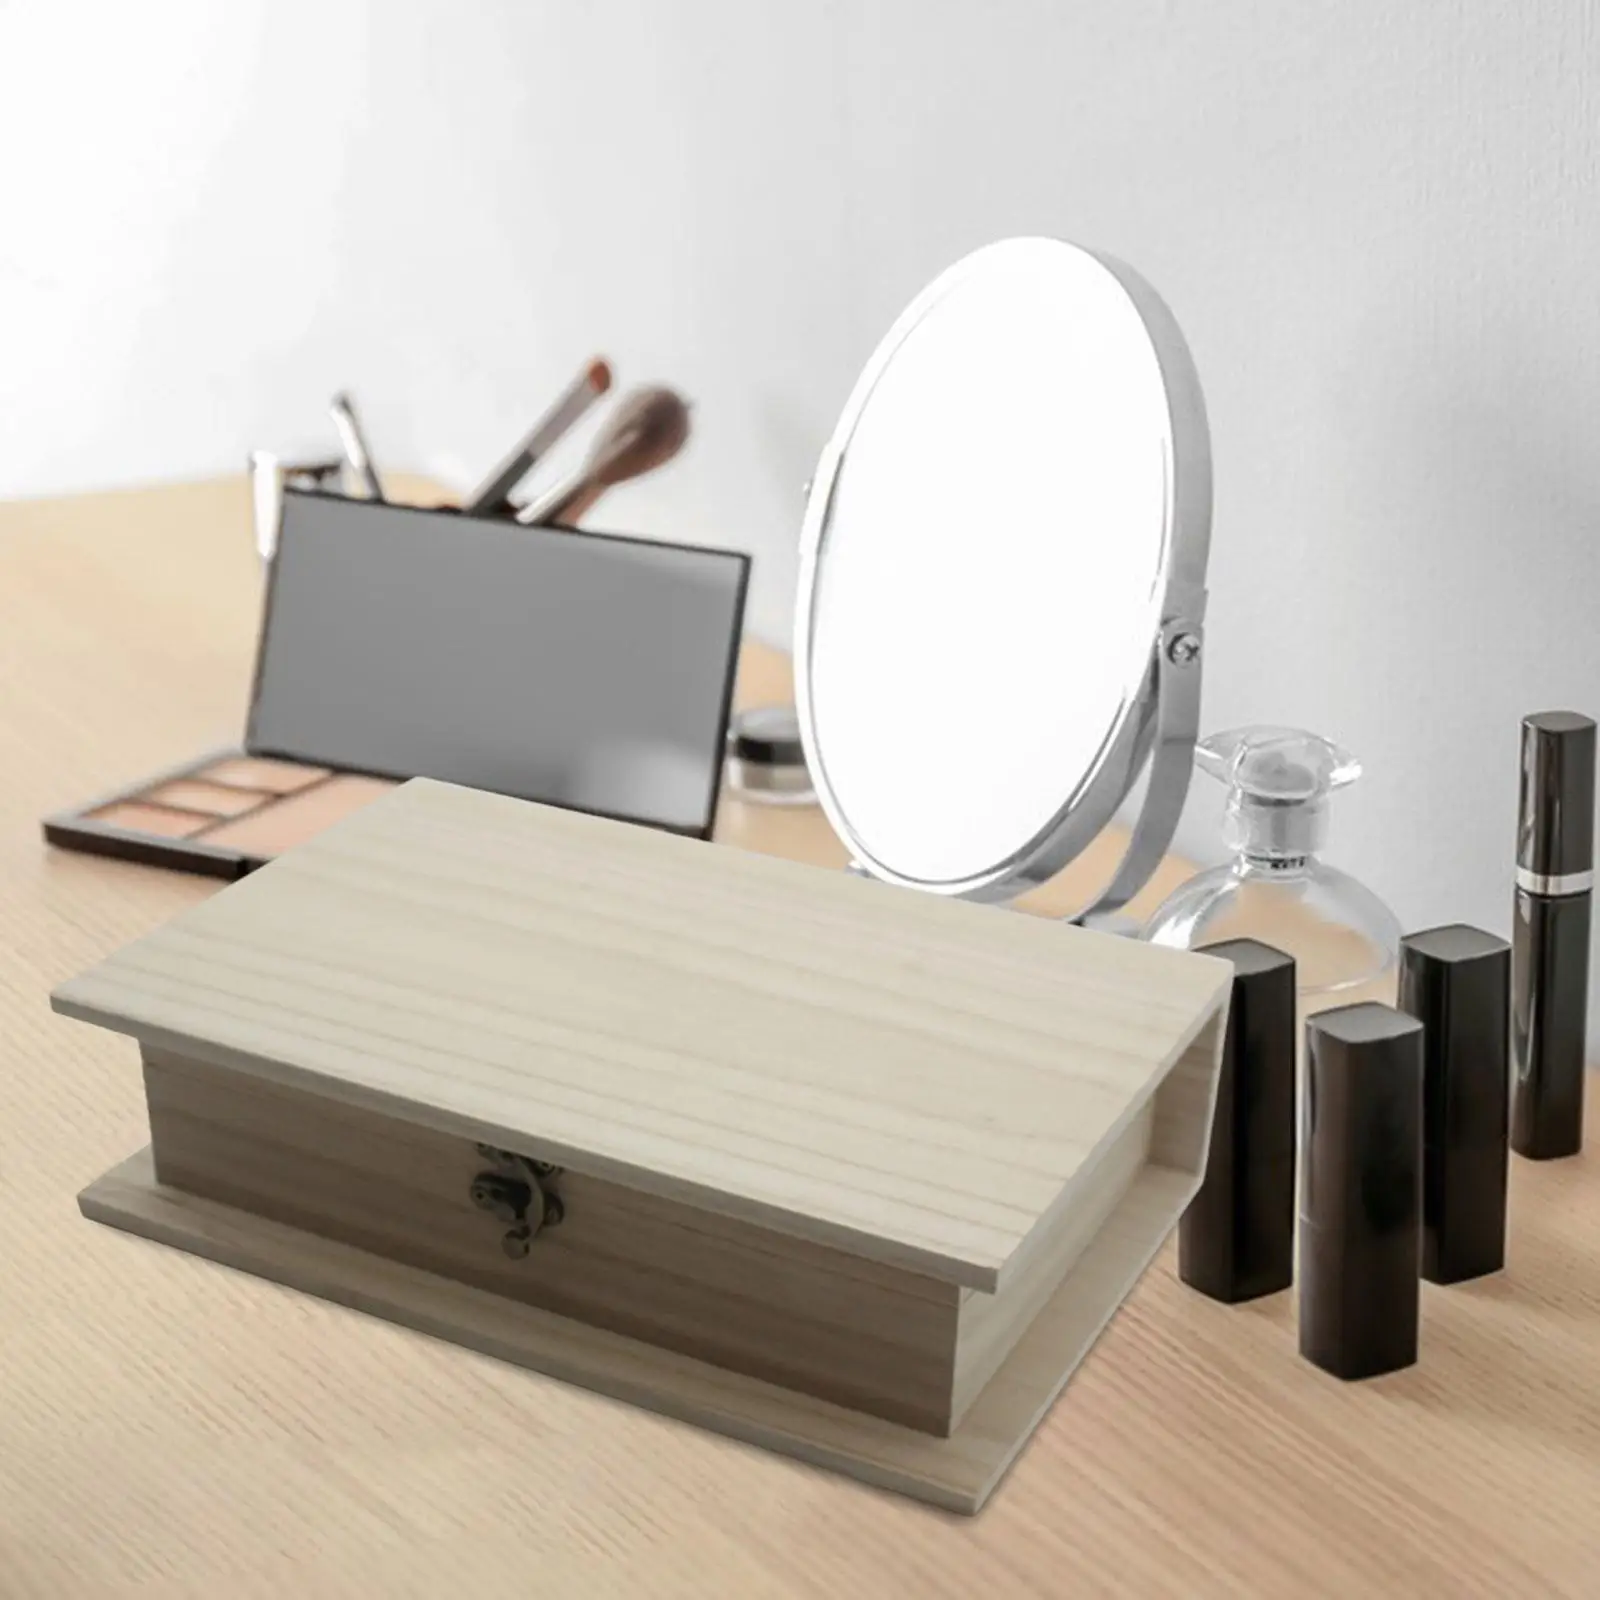 Wooden Makeup Organizer makeup Brush Holder for Bathroom Bedroom Desk